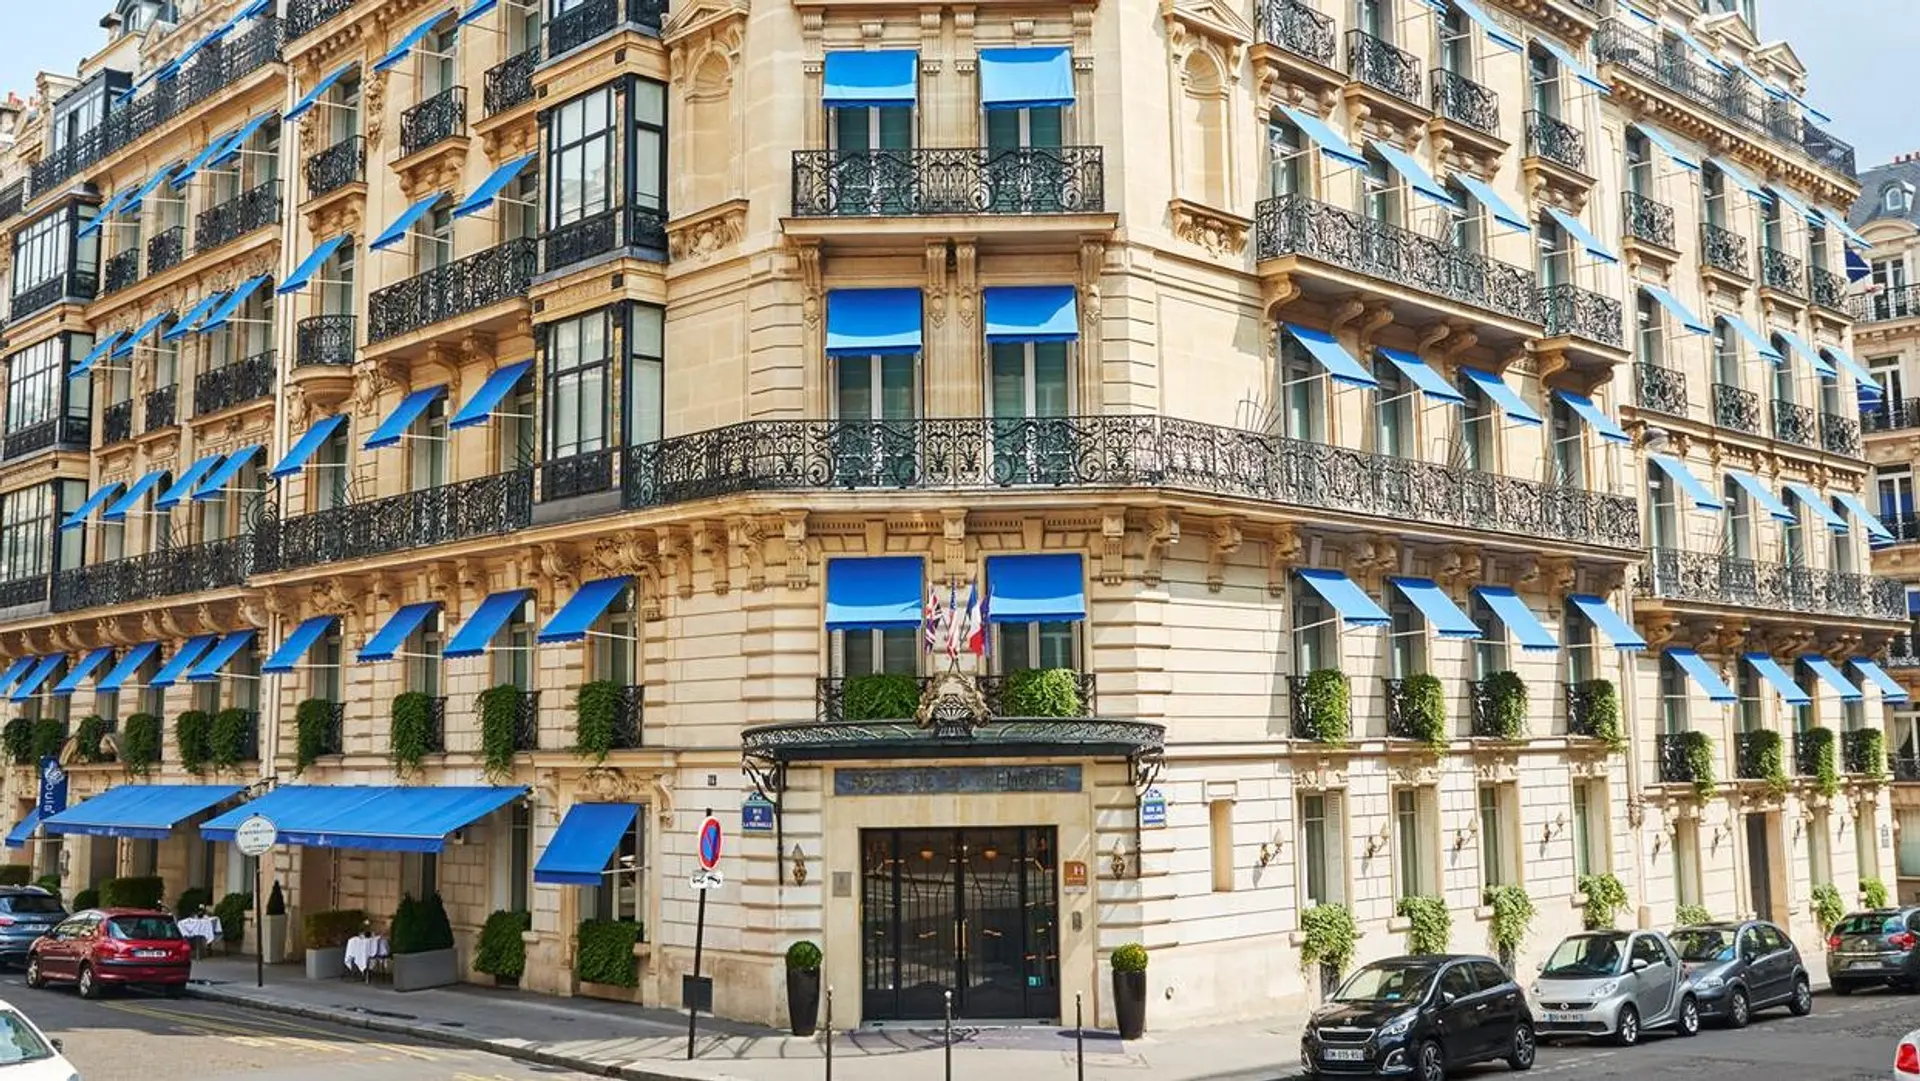 Main entrance of la tremoille hotel paris